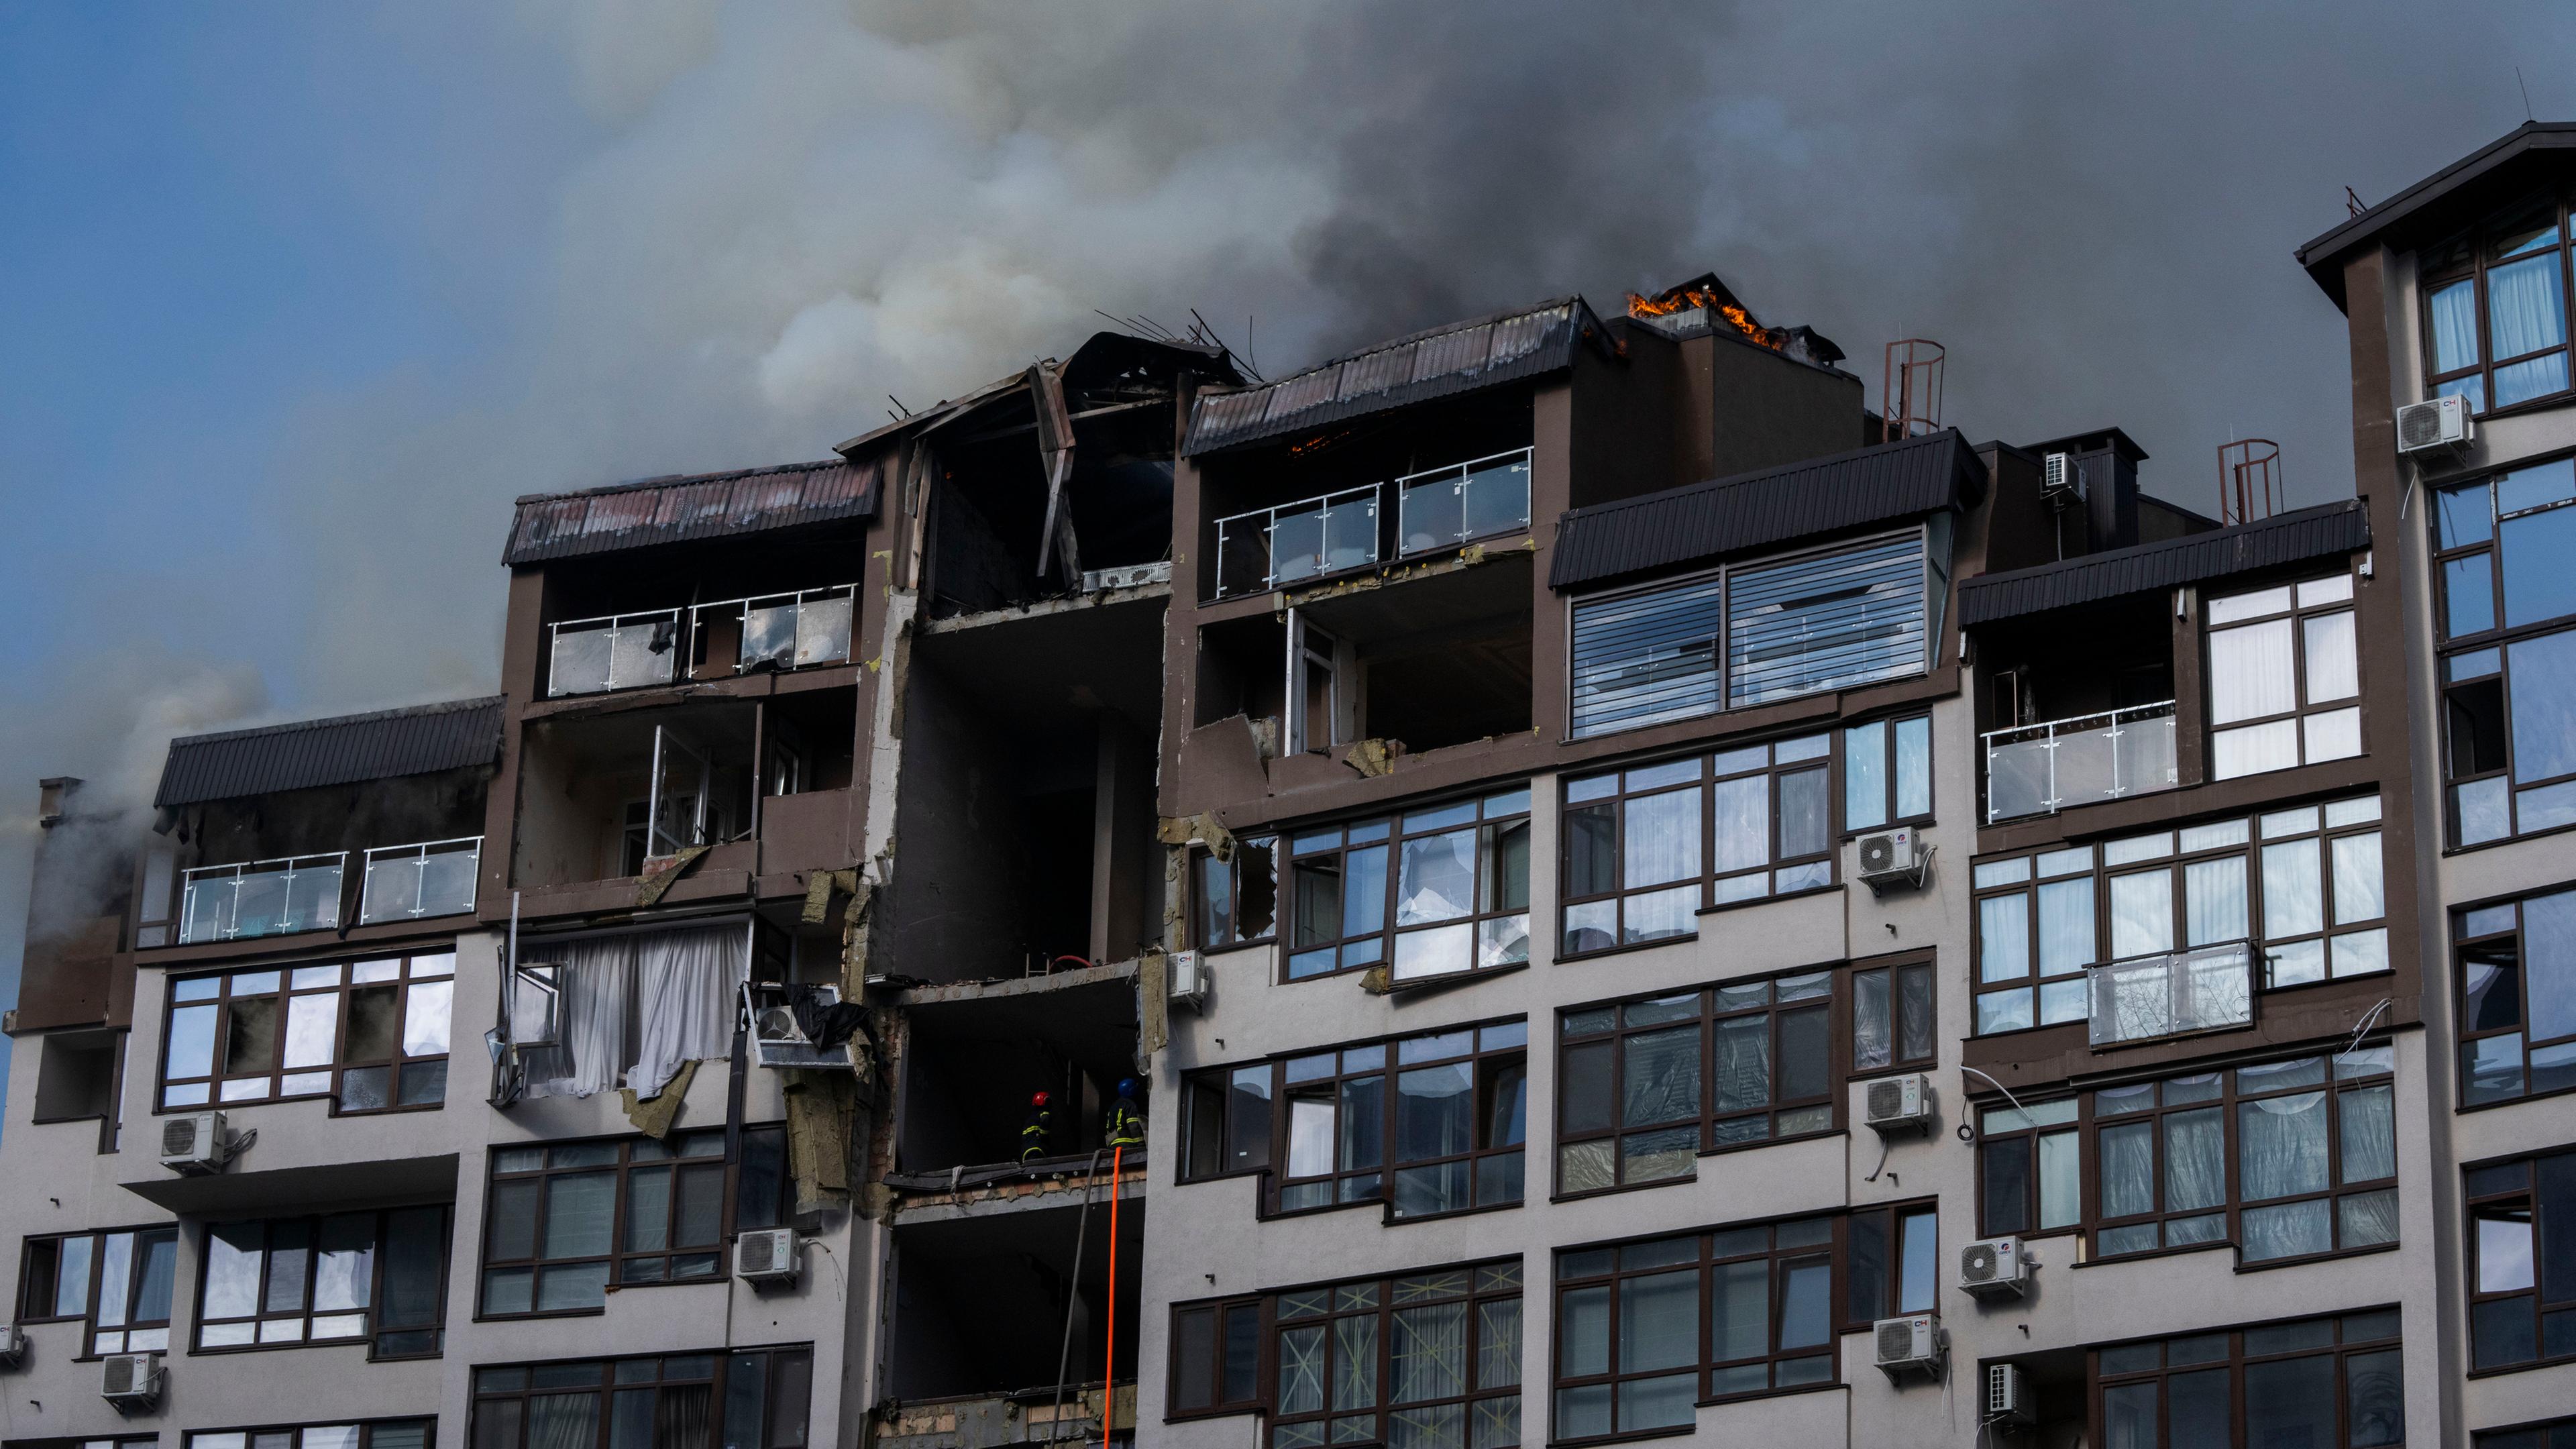 Здание разрушенное взрывом. Обстрел жилых домов в Киеве. Разрушение дома. Взрыв газа. Девятиэтажный дом.